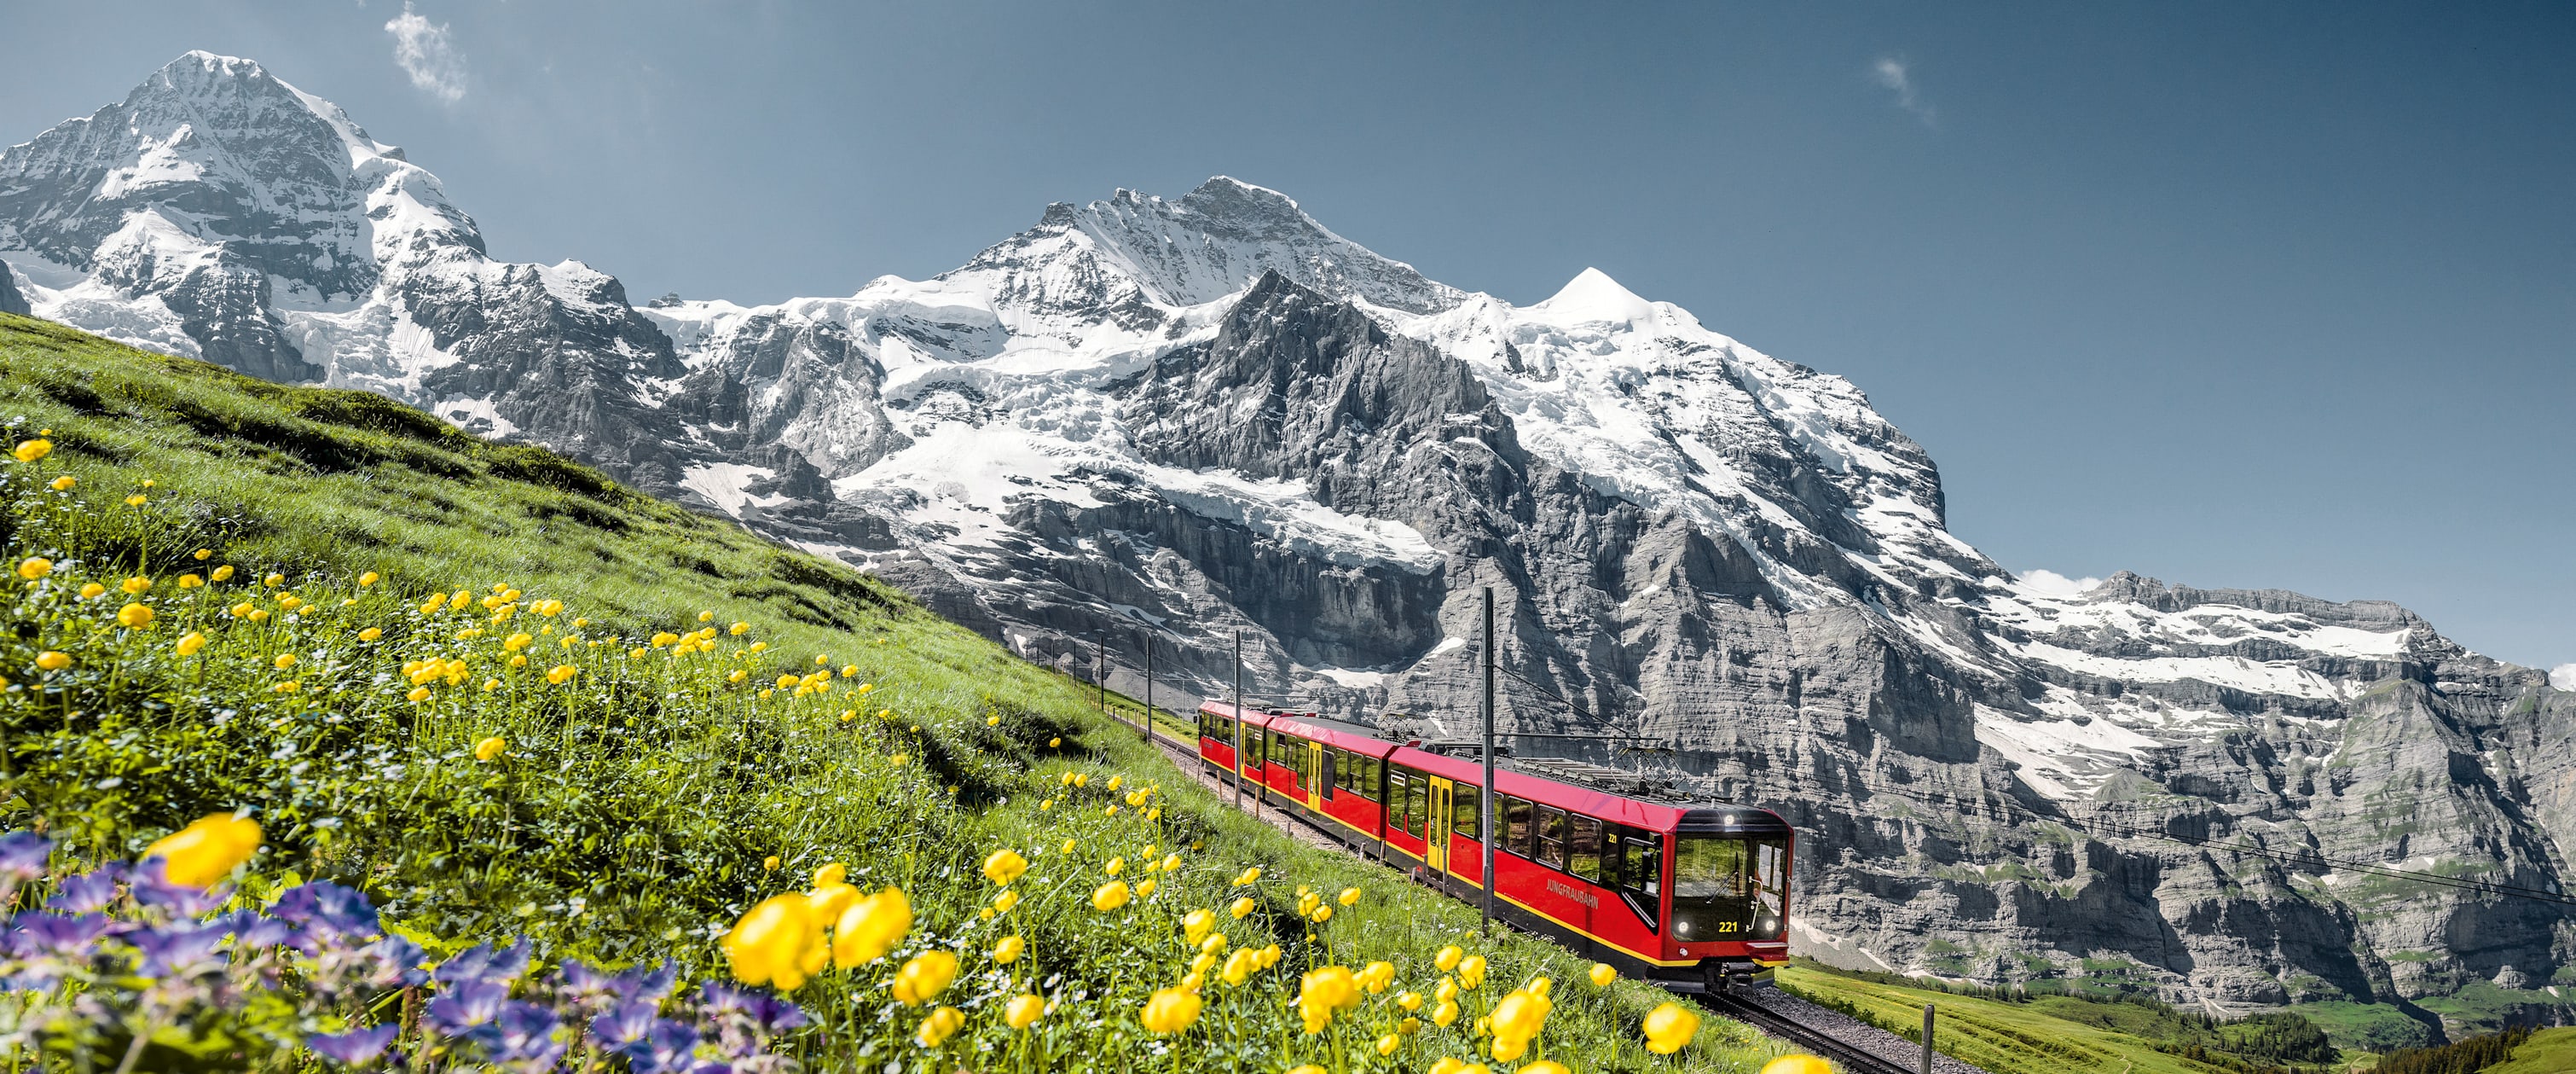 Jungfrau Railway moench jungfrau summer 03